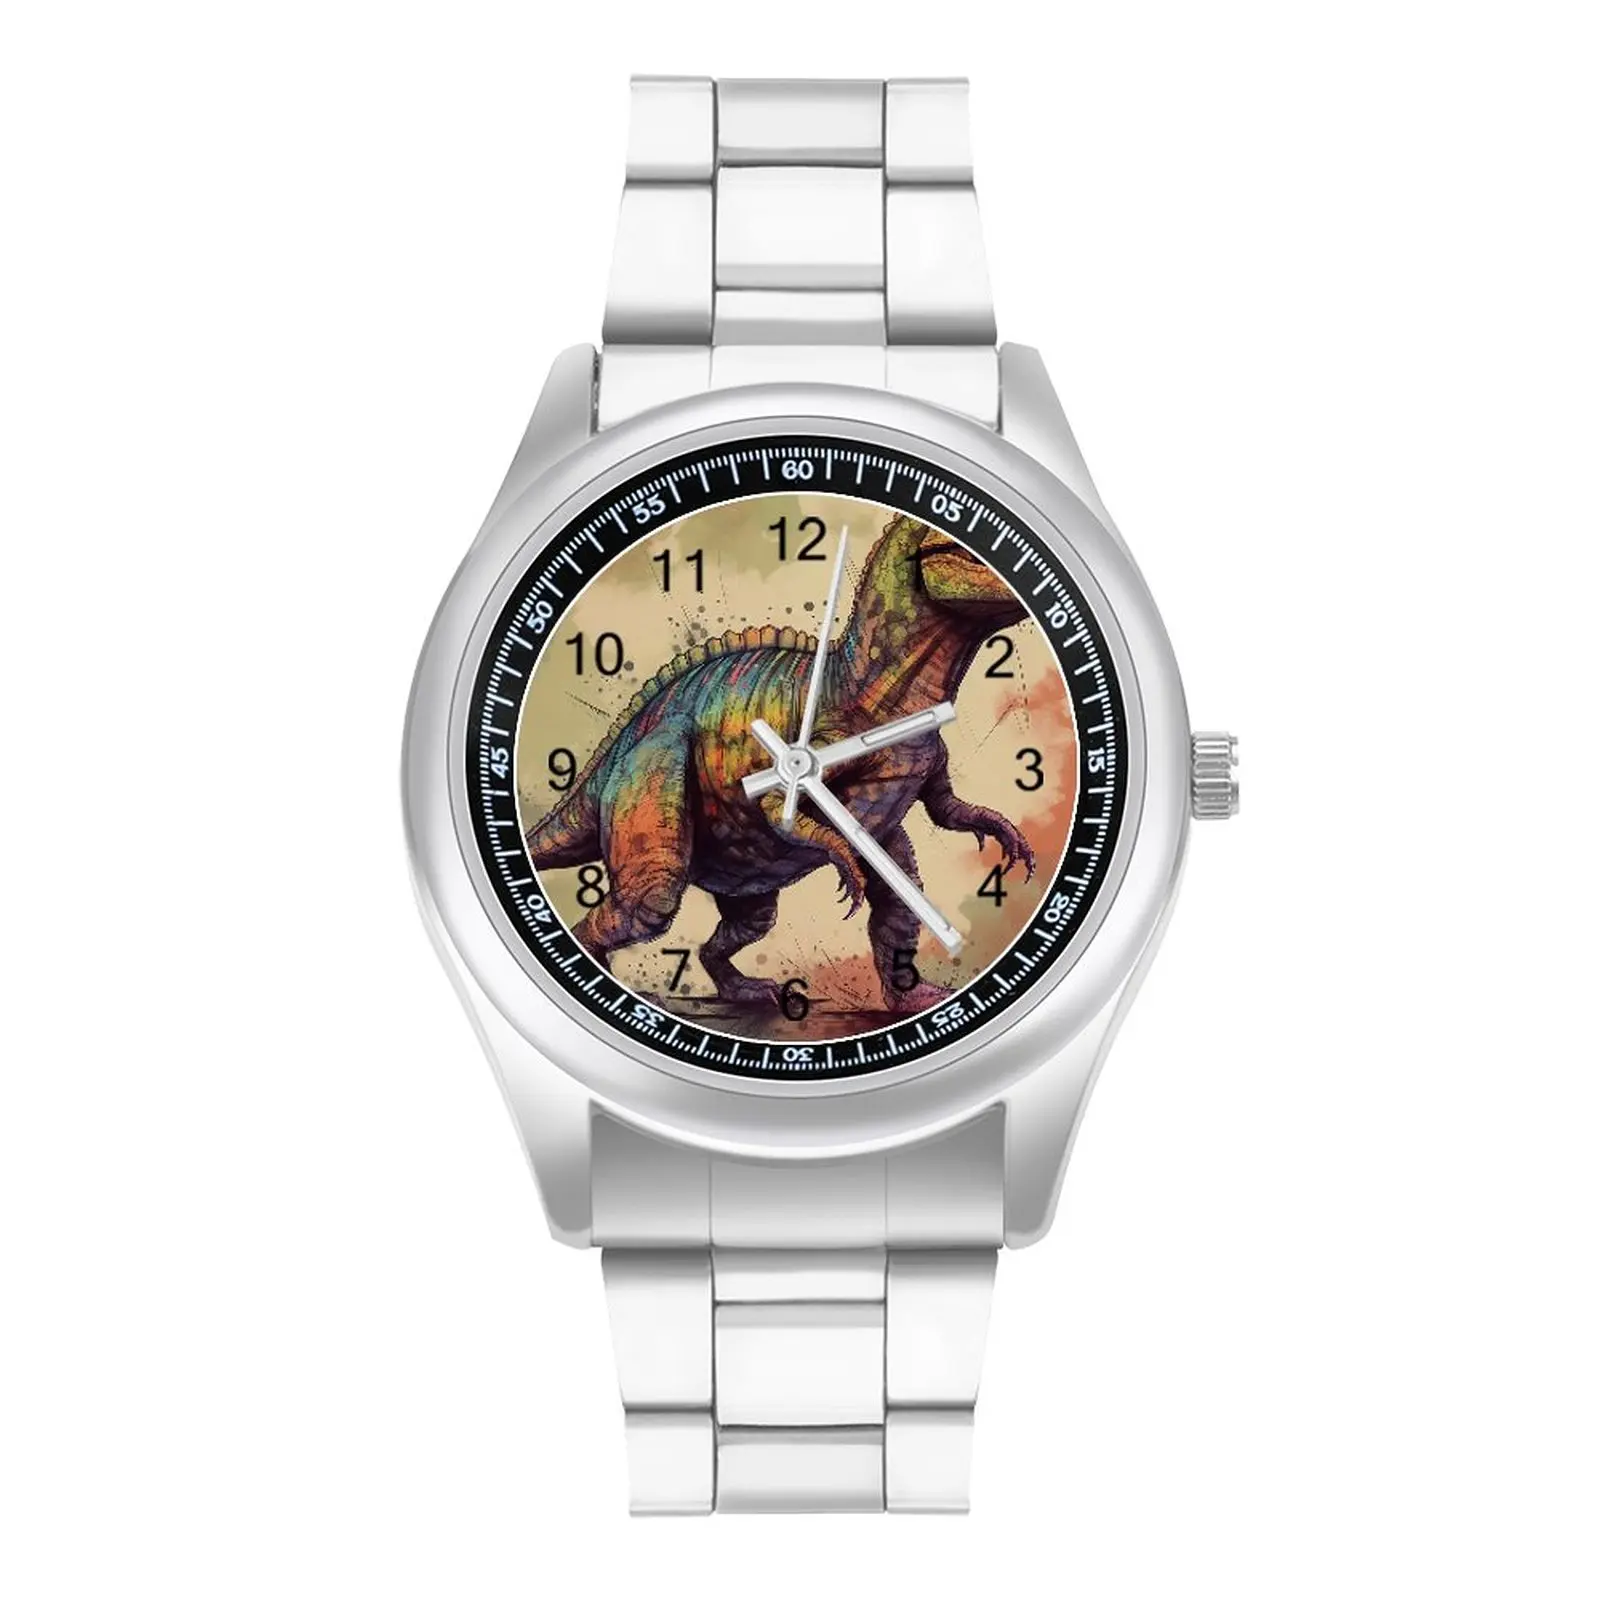 

Dinosaur Quartz Watch Cartoon Exclusive Teens Wrist Watches Design Stainless Gym Analog Wristwatch